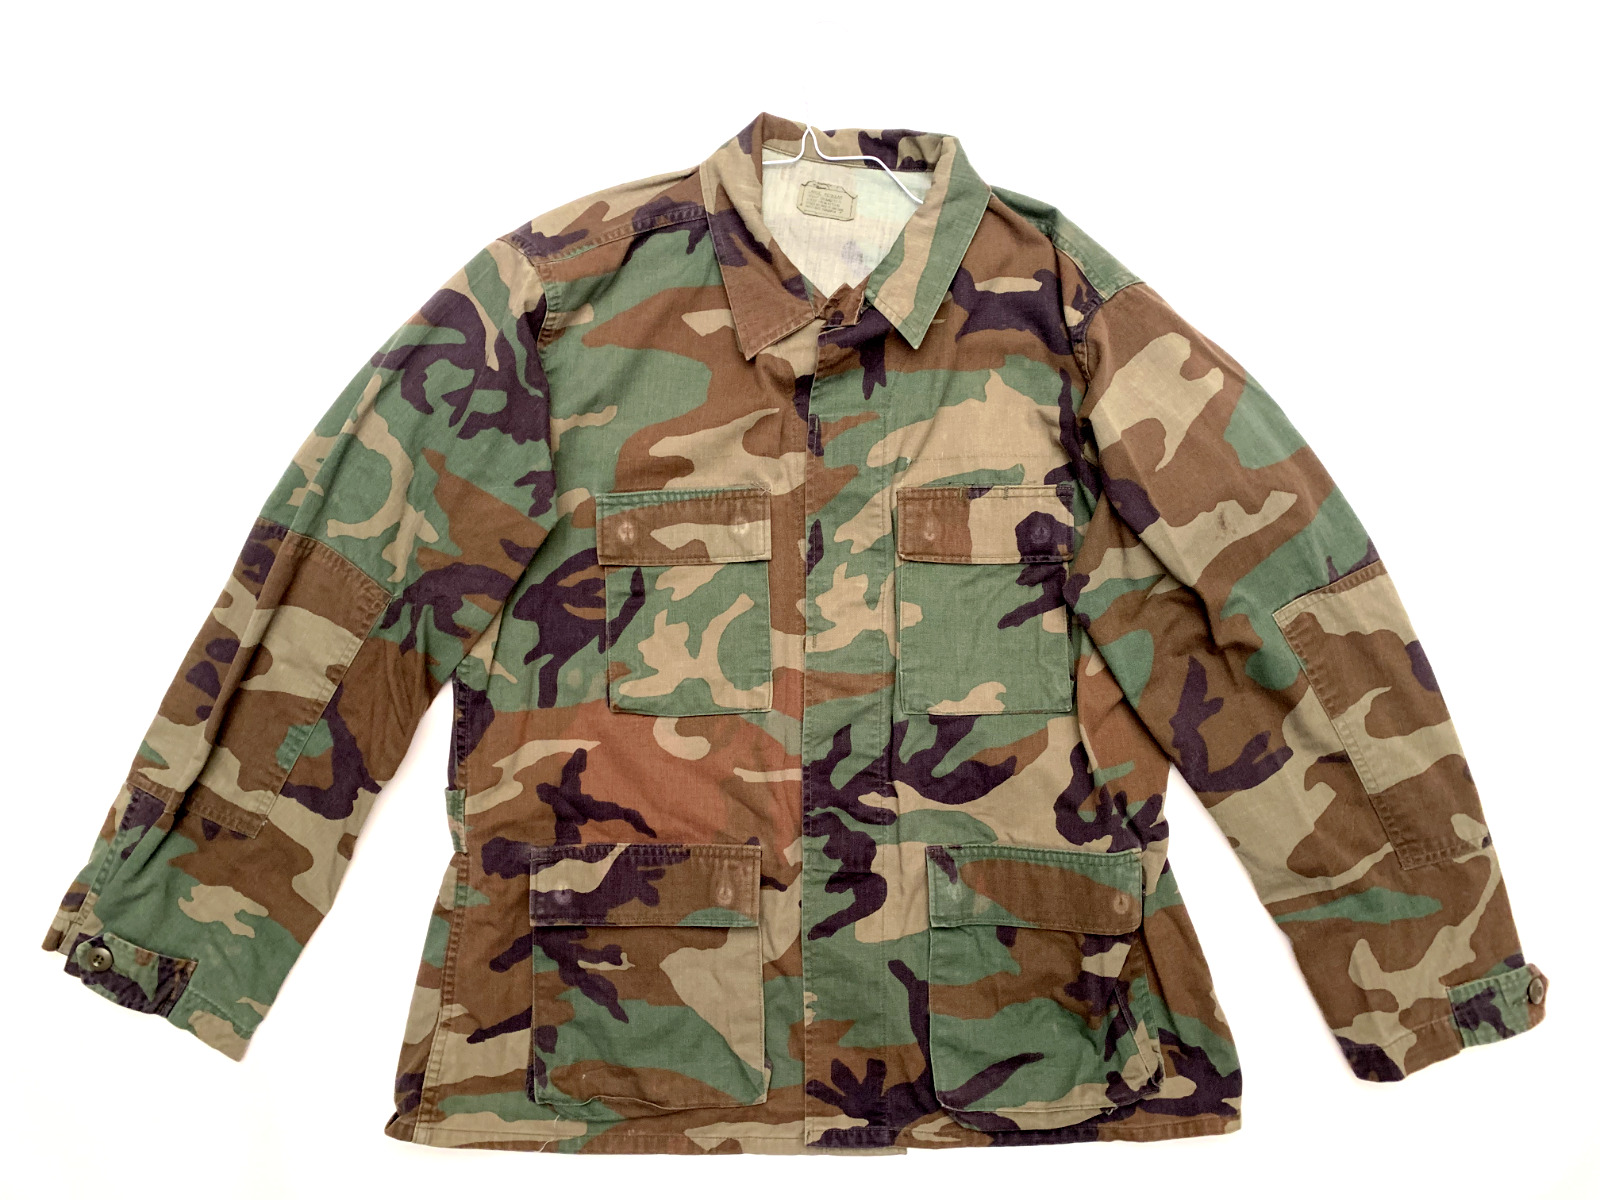 US ARMY Military Woodland Camouflauge Combat Pattern Coat Jacket - Large Regular